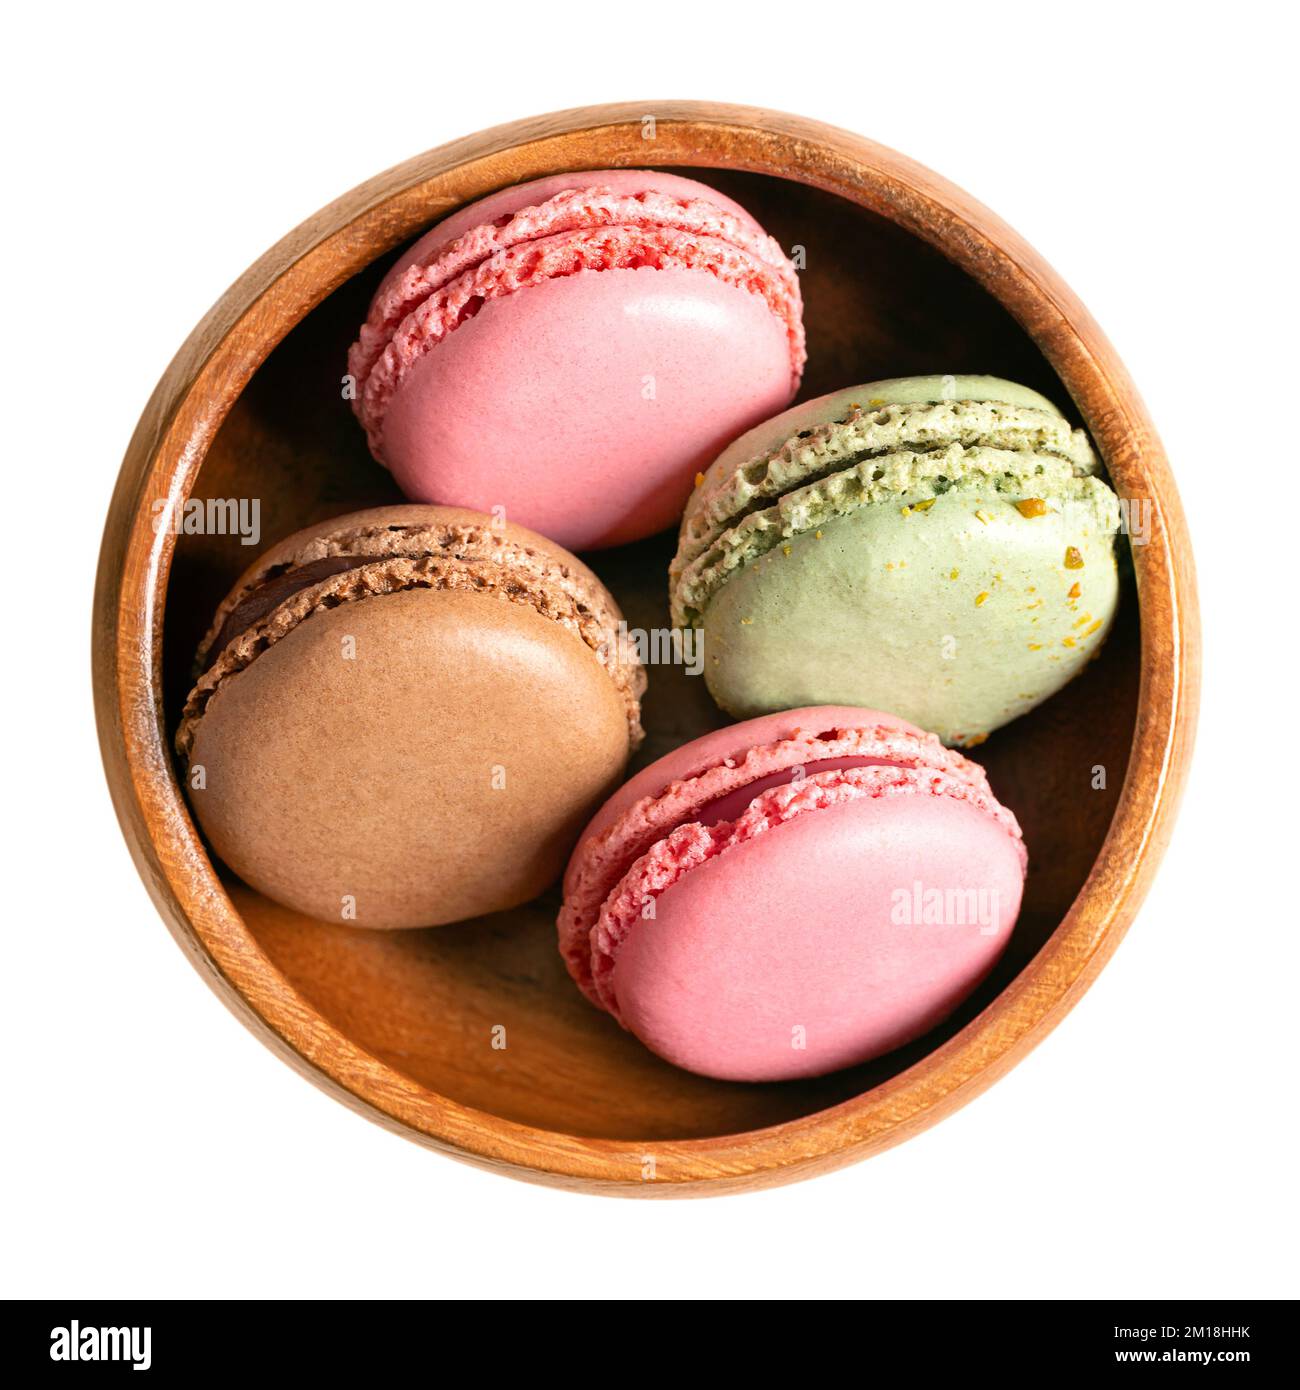 Makronen, französische Makronen in einer Holzschüssel. Süße Konfekt auf Baiser-Basis im Pariser Stil, mit Eiweiß, Zucker, Mandeln und Lebensmittelfarben. Stockfoto